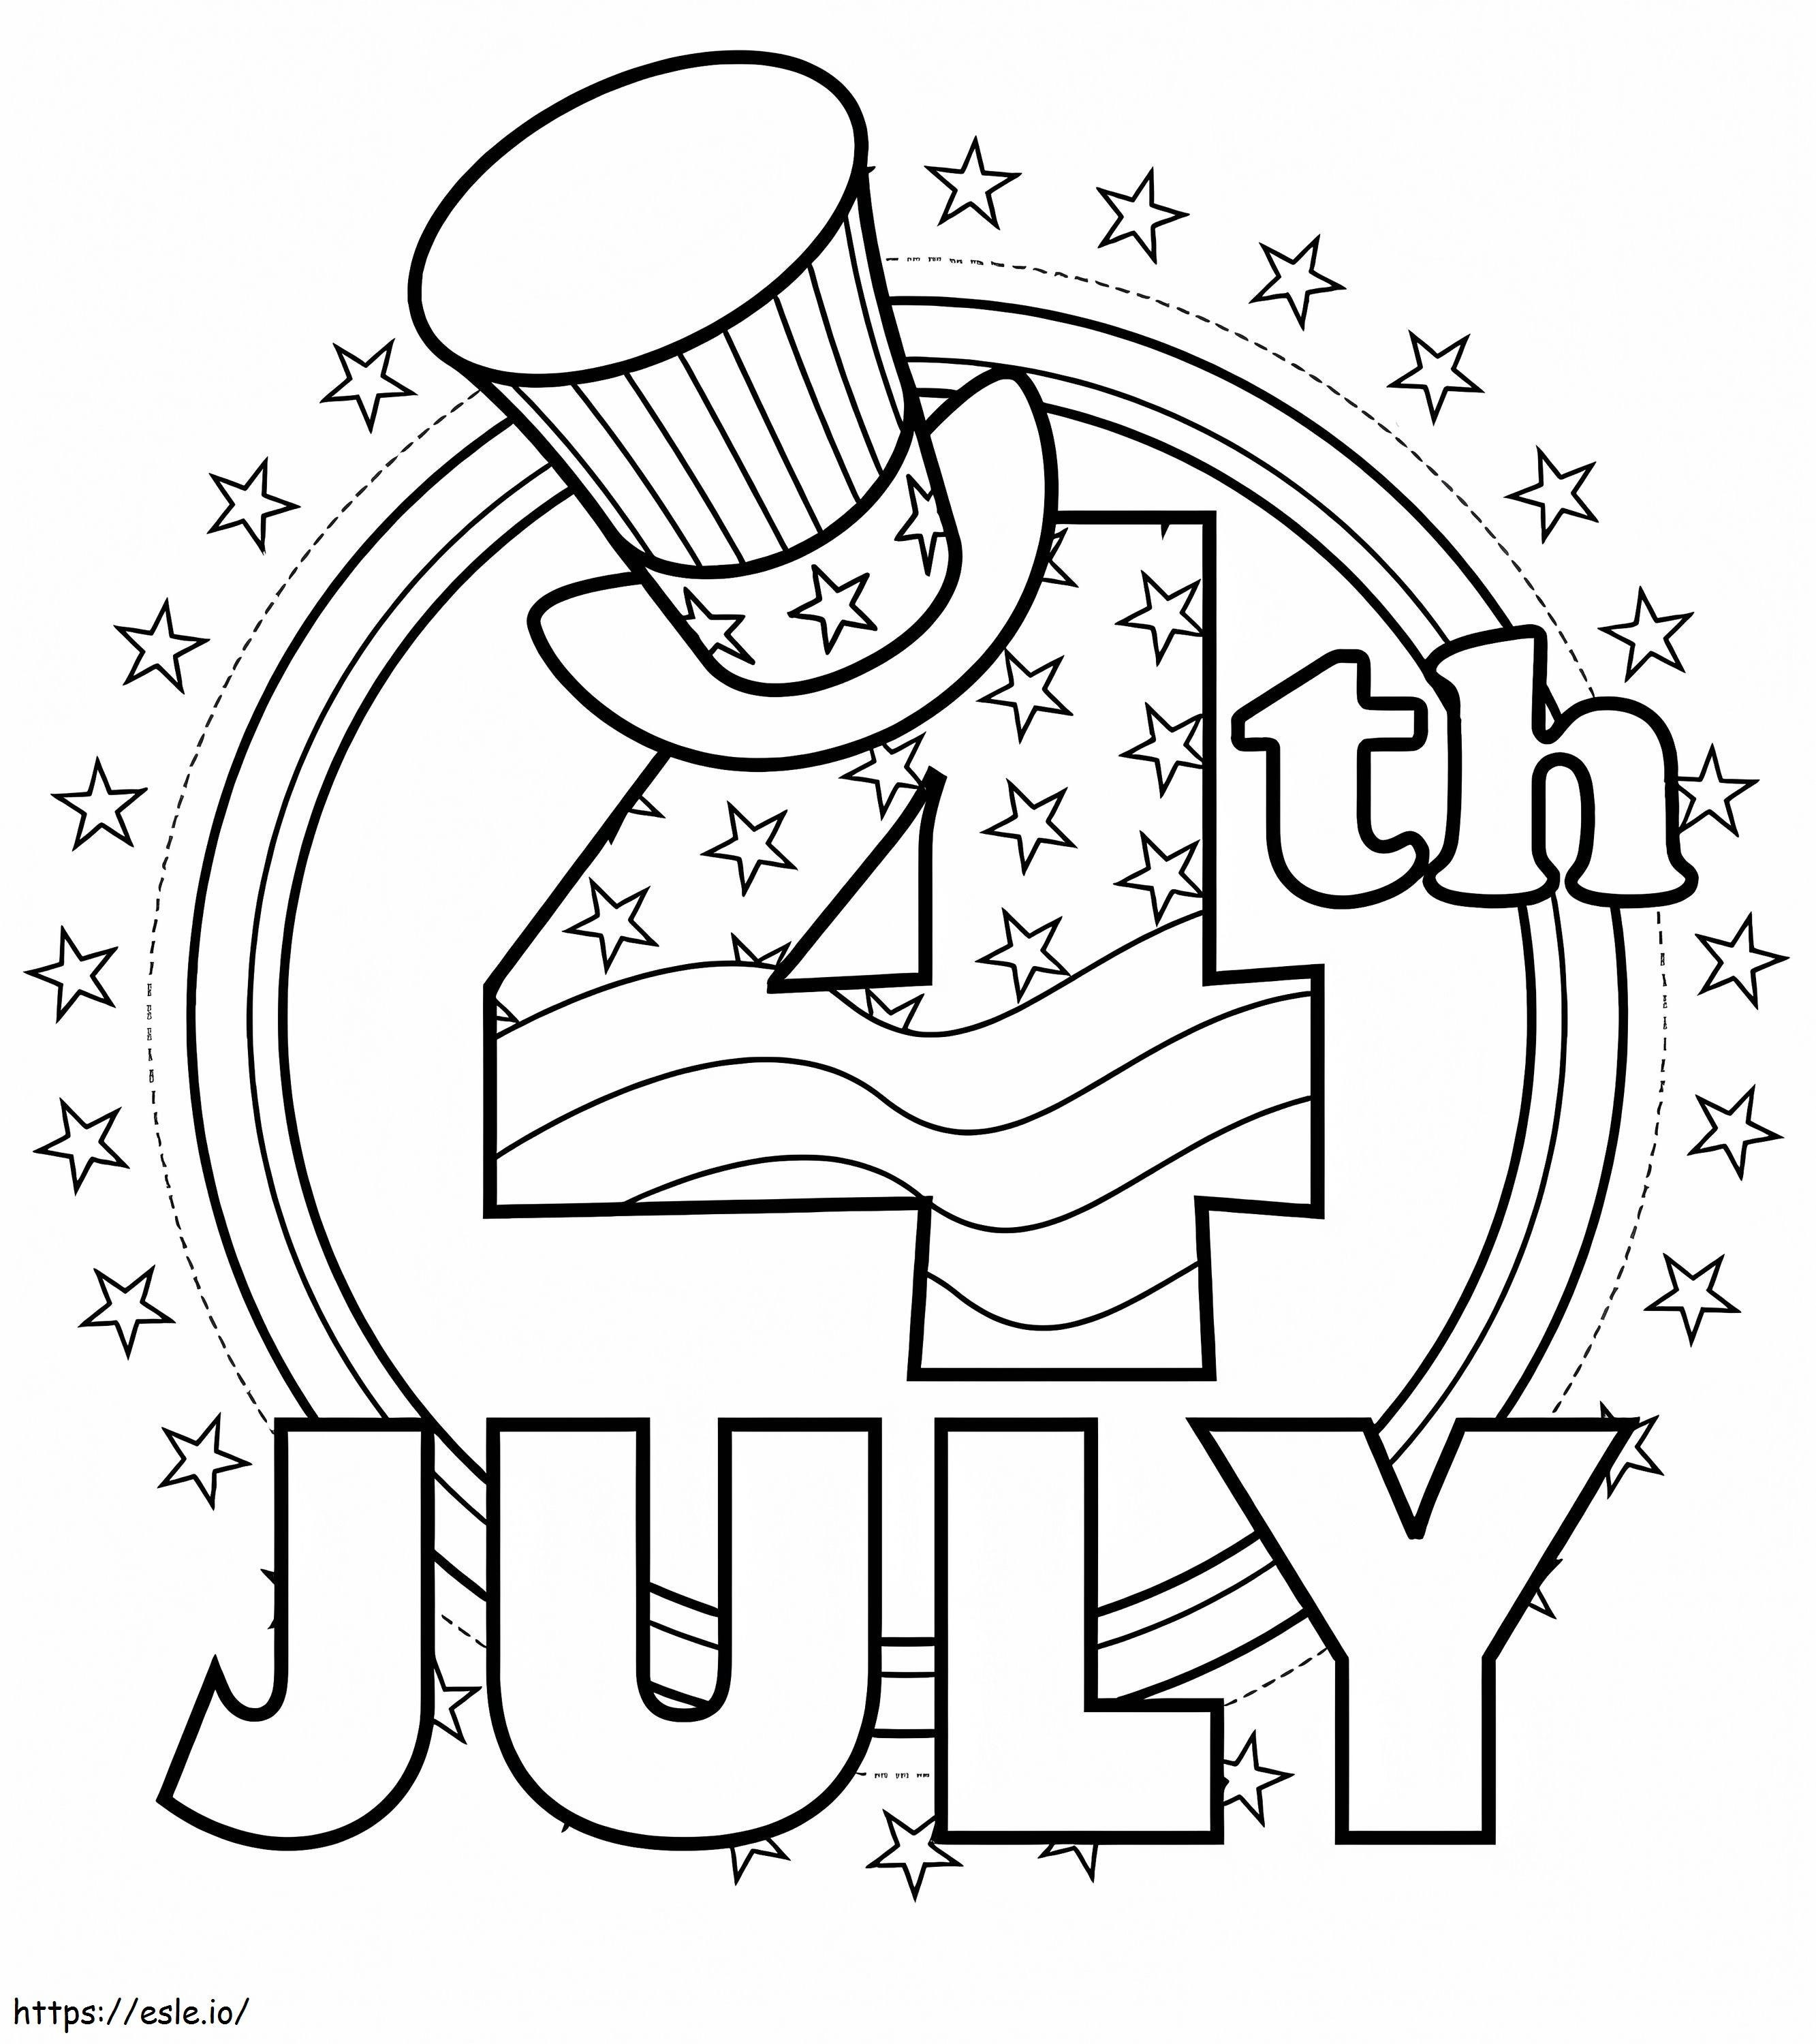 4 juli Amerikaanse onafhankelijkheidsdag kleurplaat kleurplaat